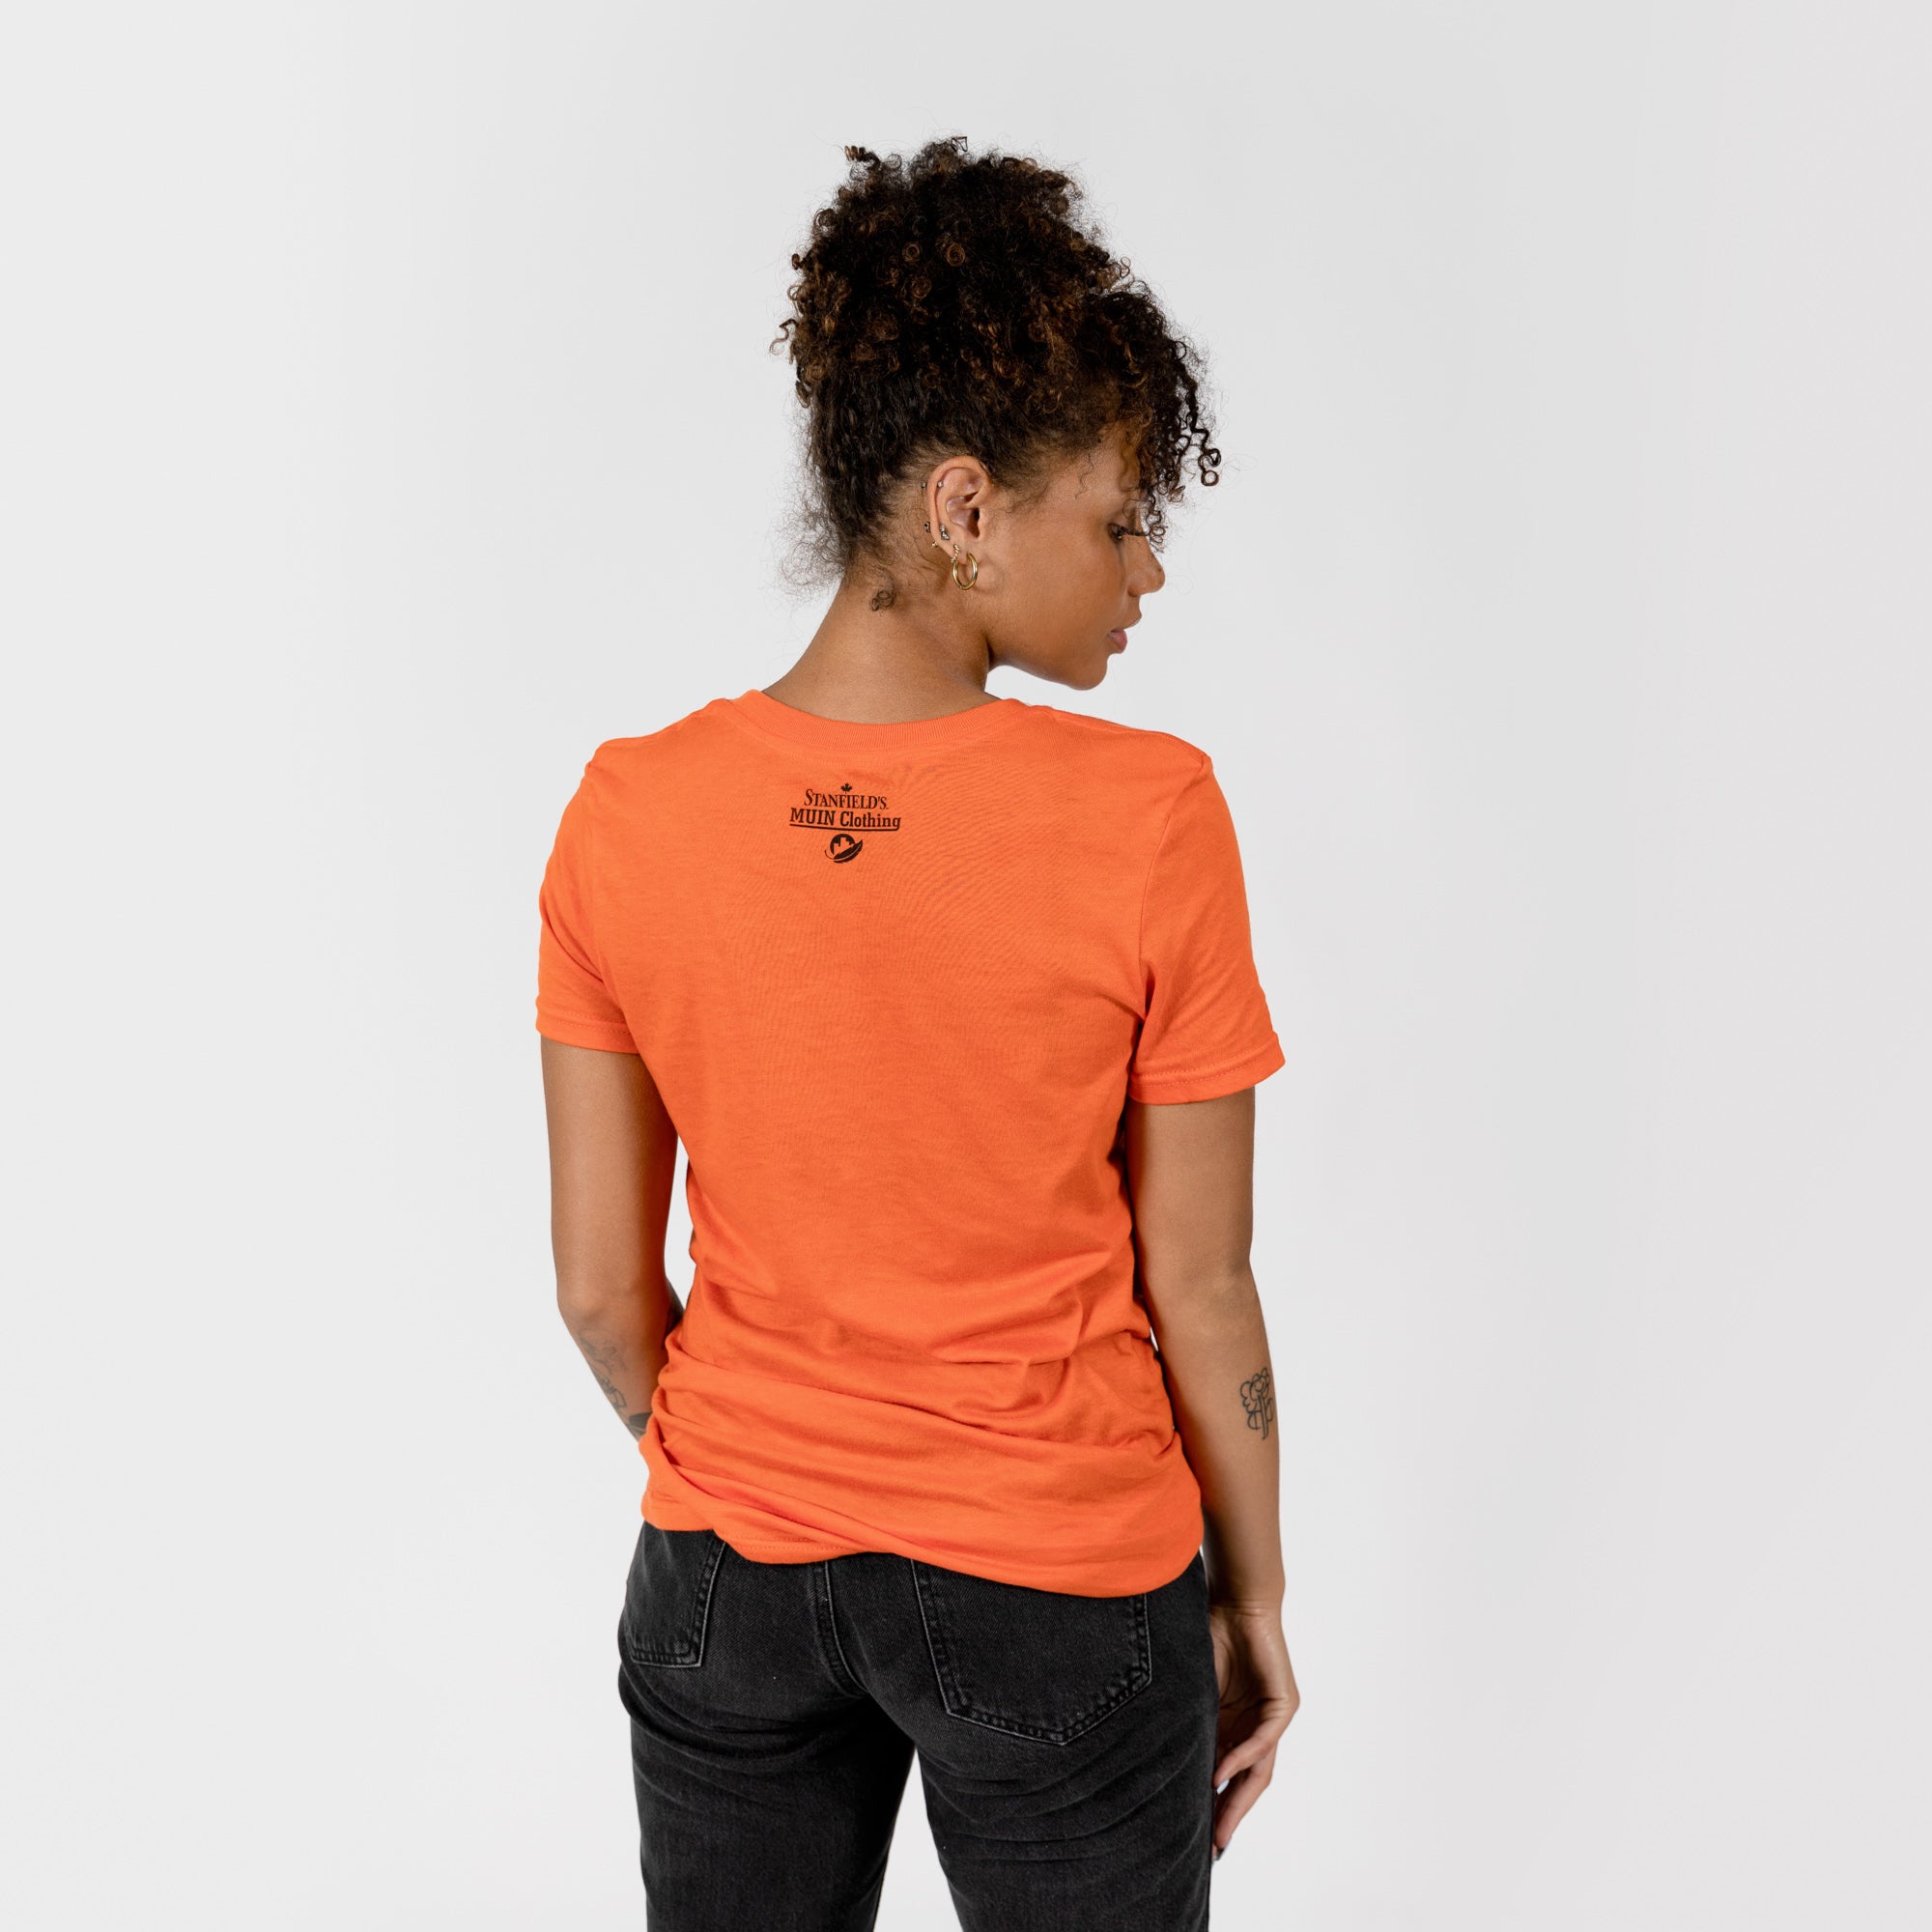 T-shirt orange adulte de Muin X Stanfield - JOURNÉE NATIONALE POUR LA VÉRITÉ ET LA RÉCONCILIATION "PLUMES"